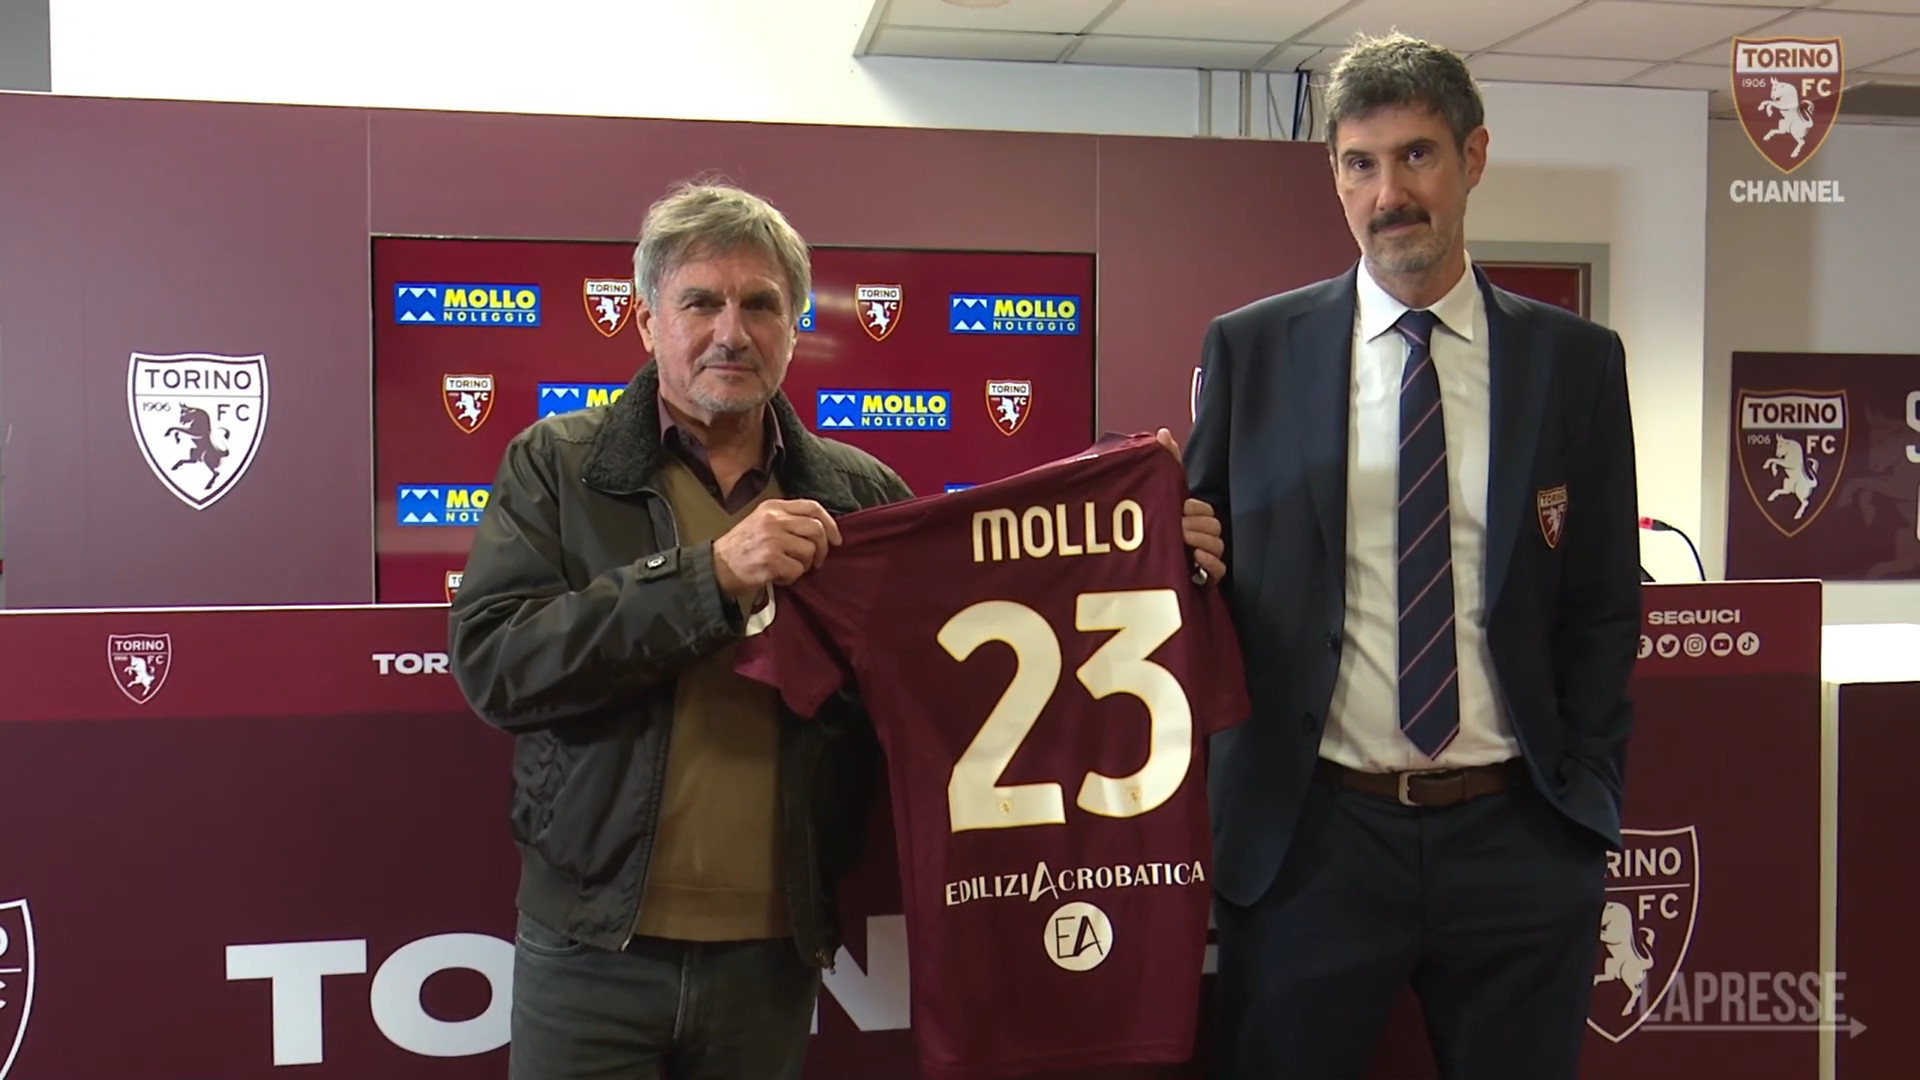 Mollo ha stretto una partnership con il Torino FC